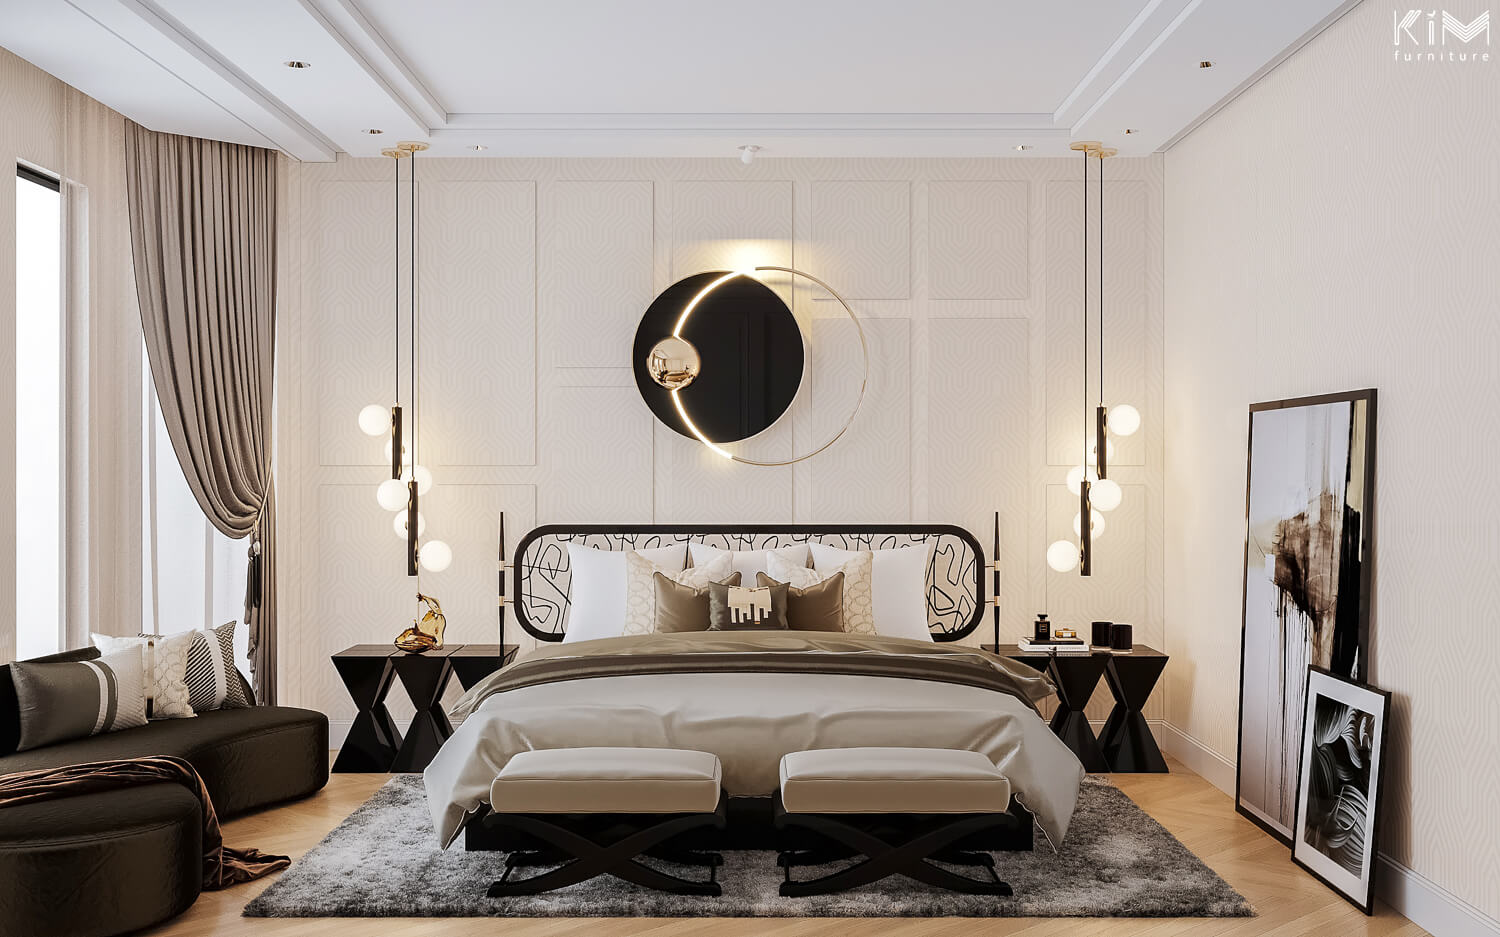 Thiết kế phòng ngủ tân cổ điển nhẹ nhàng thanh lịch vinhomes harmony